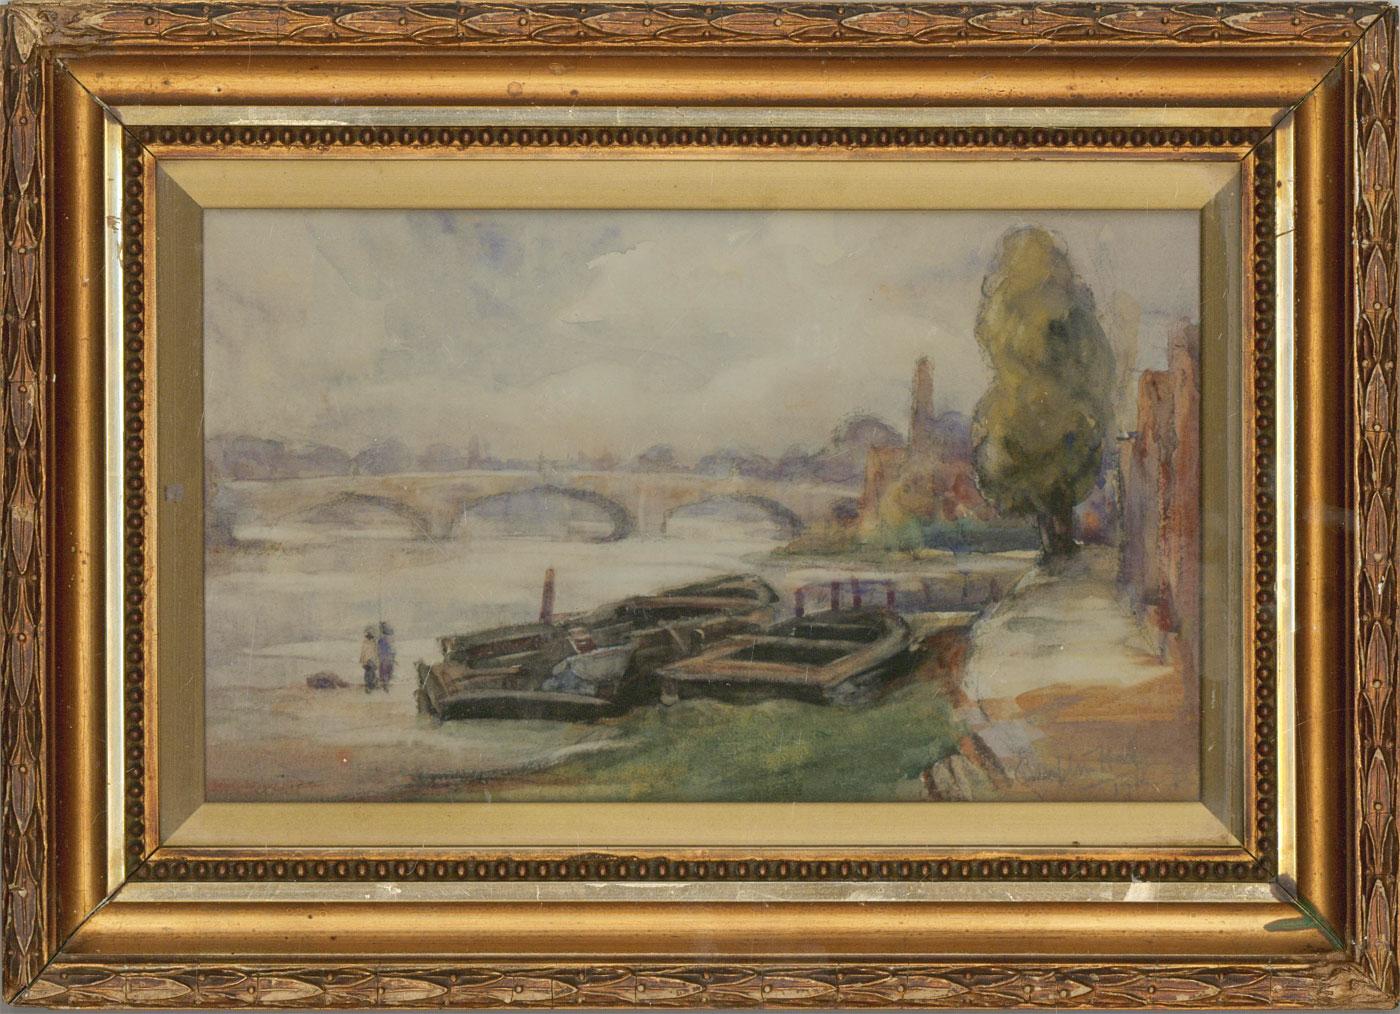 Une belle aquarelle originale du début du 20ème siècle avec des détails au fusain par l'artiste britannique Joseph Compton Hall RBA (1863-1937), montrant une vue de la ville, une grande rivière s'étendant au loin. Un certain nombre de grands bateaux